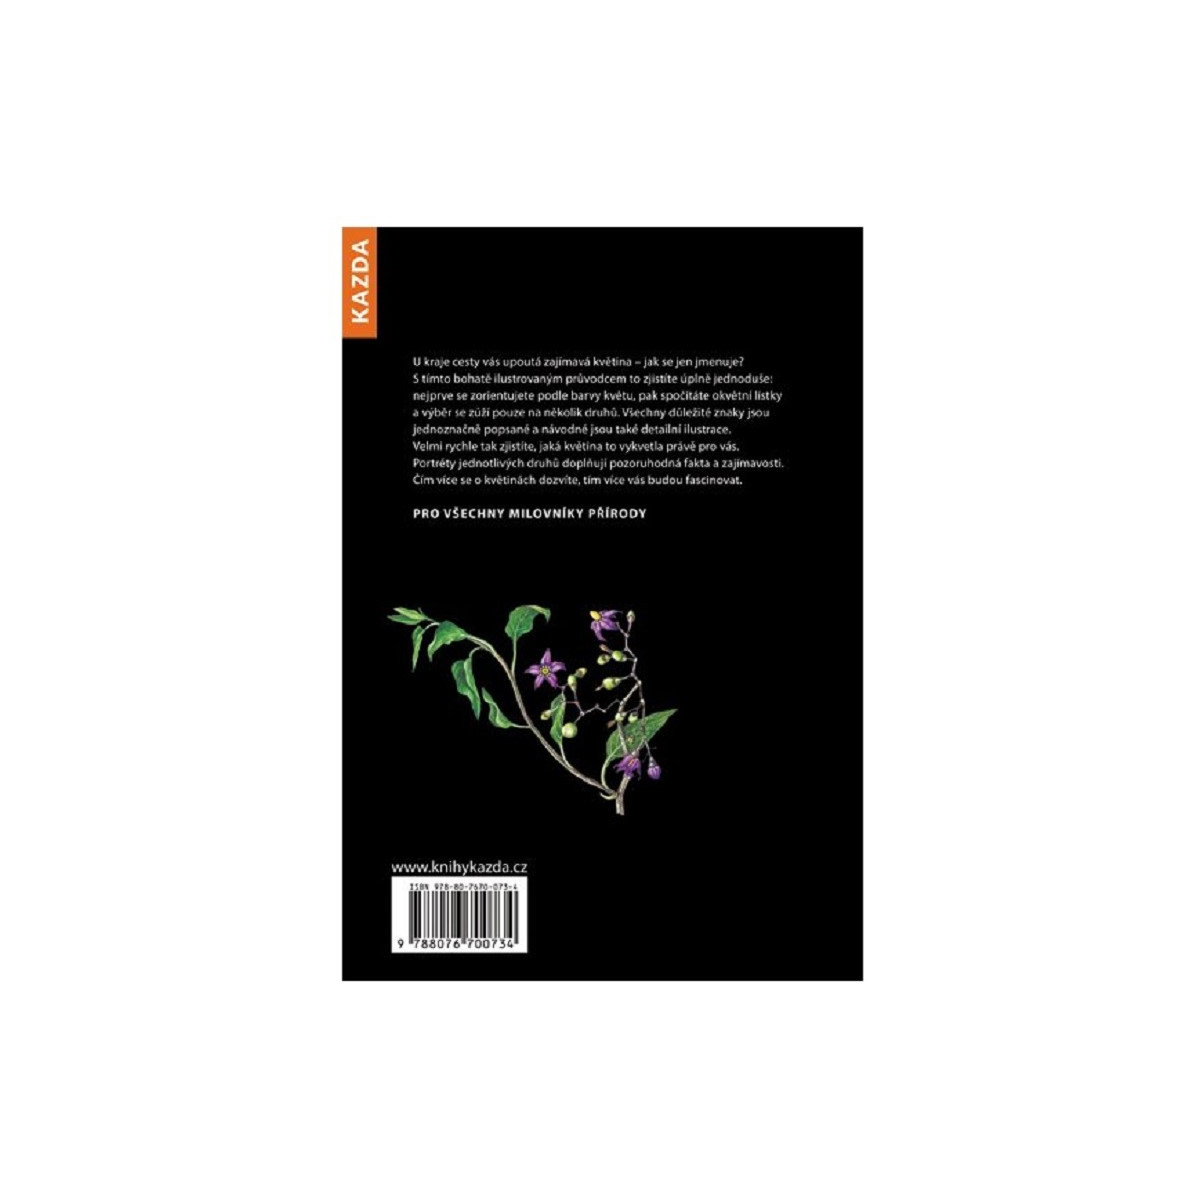 Květiny - Rozpoznejte snadno 100 druhů - Nakladatelství Kazda - knihy - 1 ks